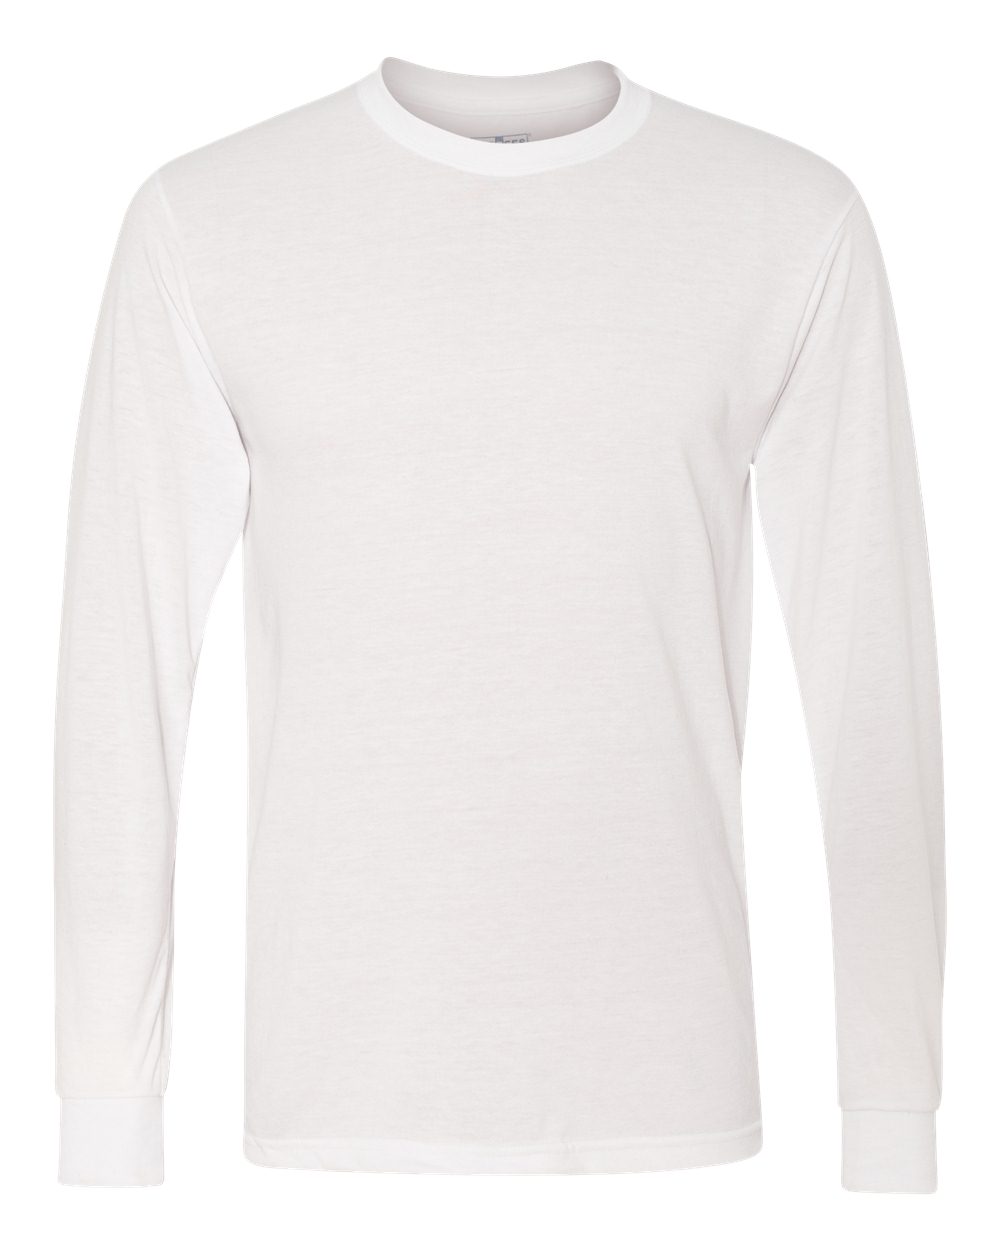 Peace Love Softball KTN Athletics Sublimated Long Sleeve Shirt